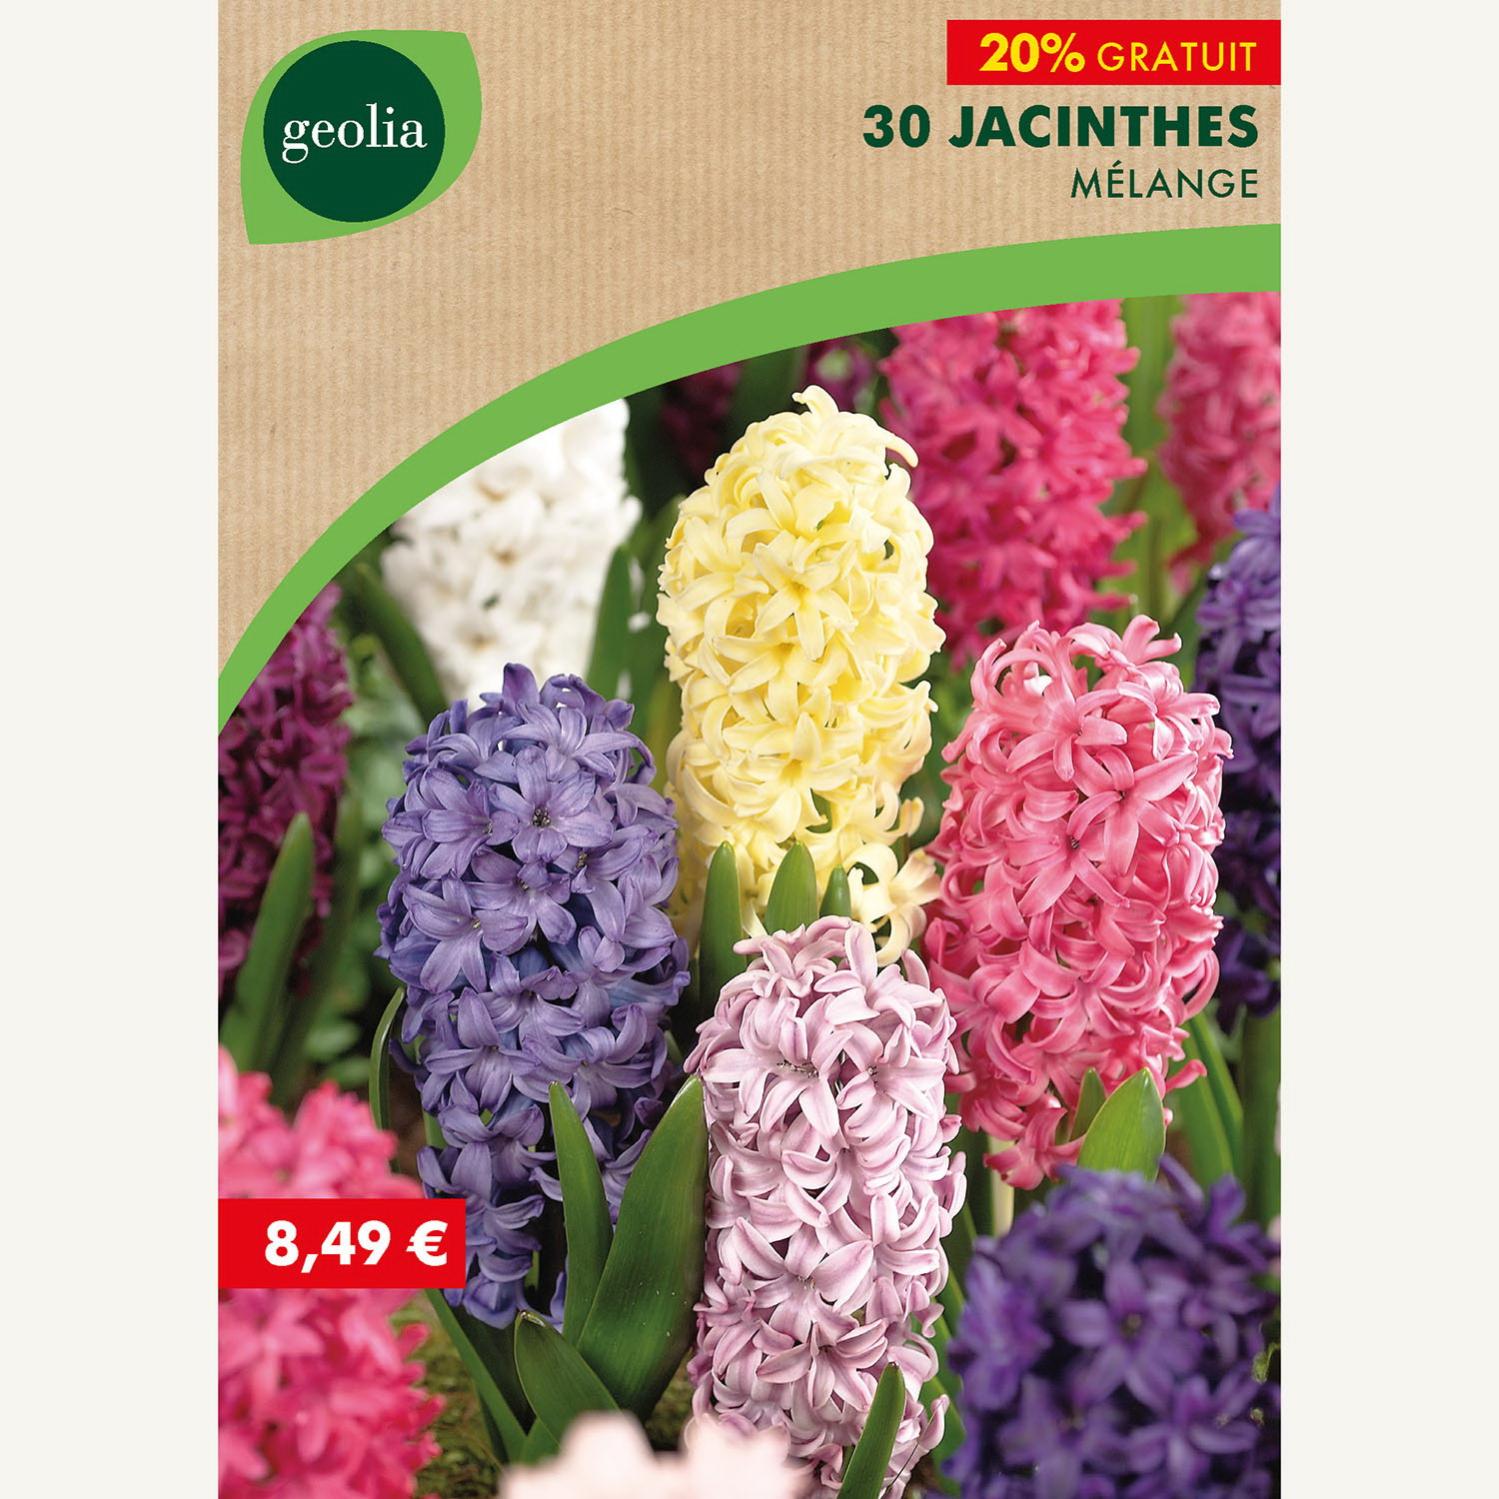 30 jacinthes mélange 14/15 multicouleur | Leroy Merlin